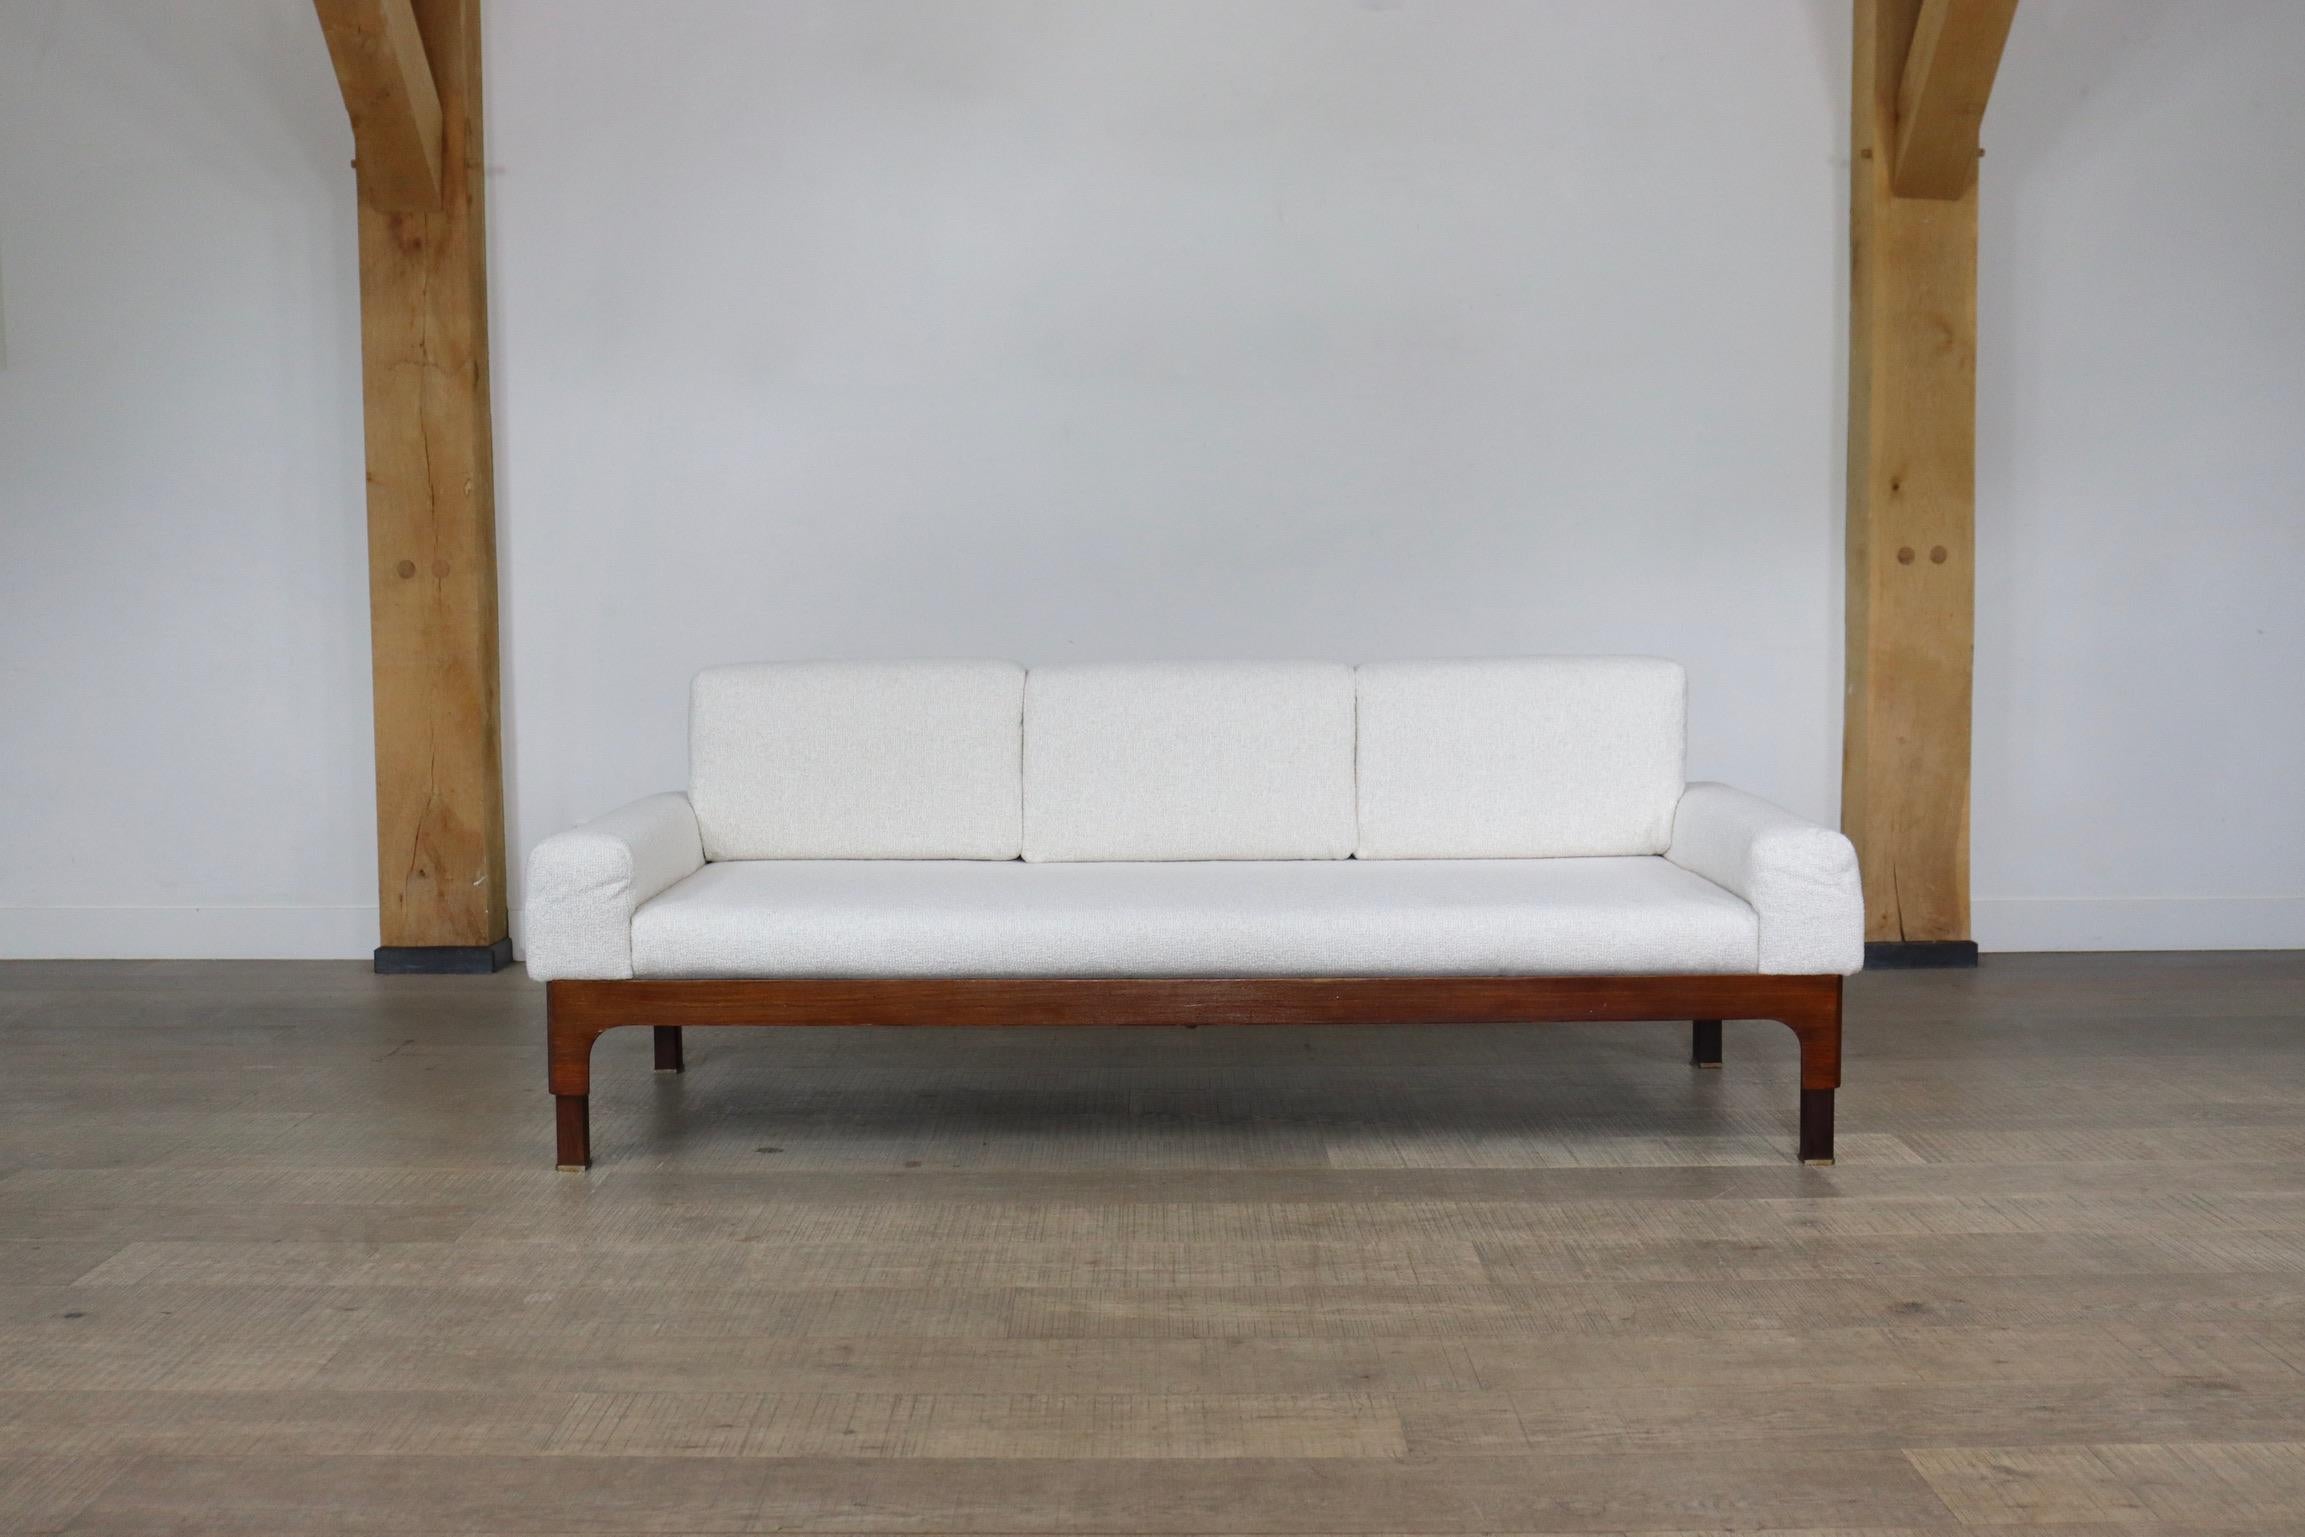 Amazing 'Romantica' sofa by Piero Ranzani for Elam in rosewood, Italy 1950s.
Les lignes droites de la construction en bois se détachent magnifiquement des formes arrondies des coussins et des sièges. On retrouve de jolis détails dans les formes